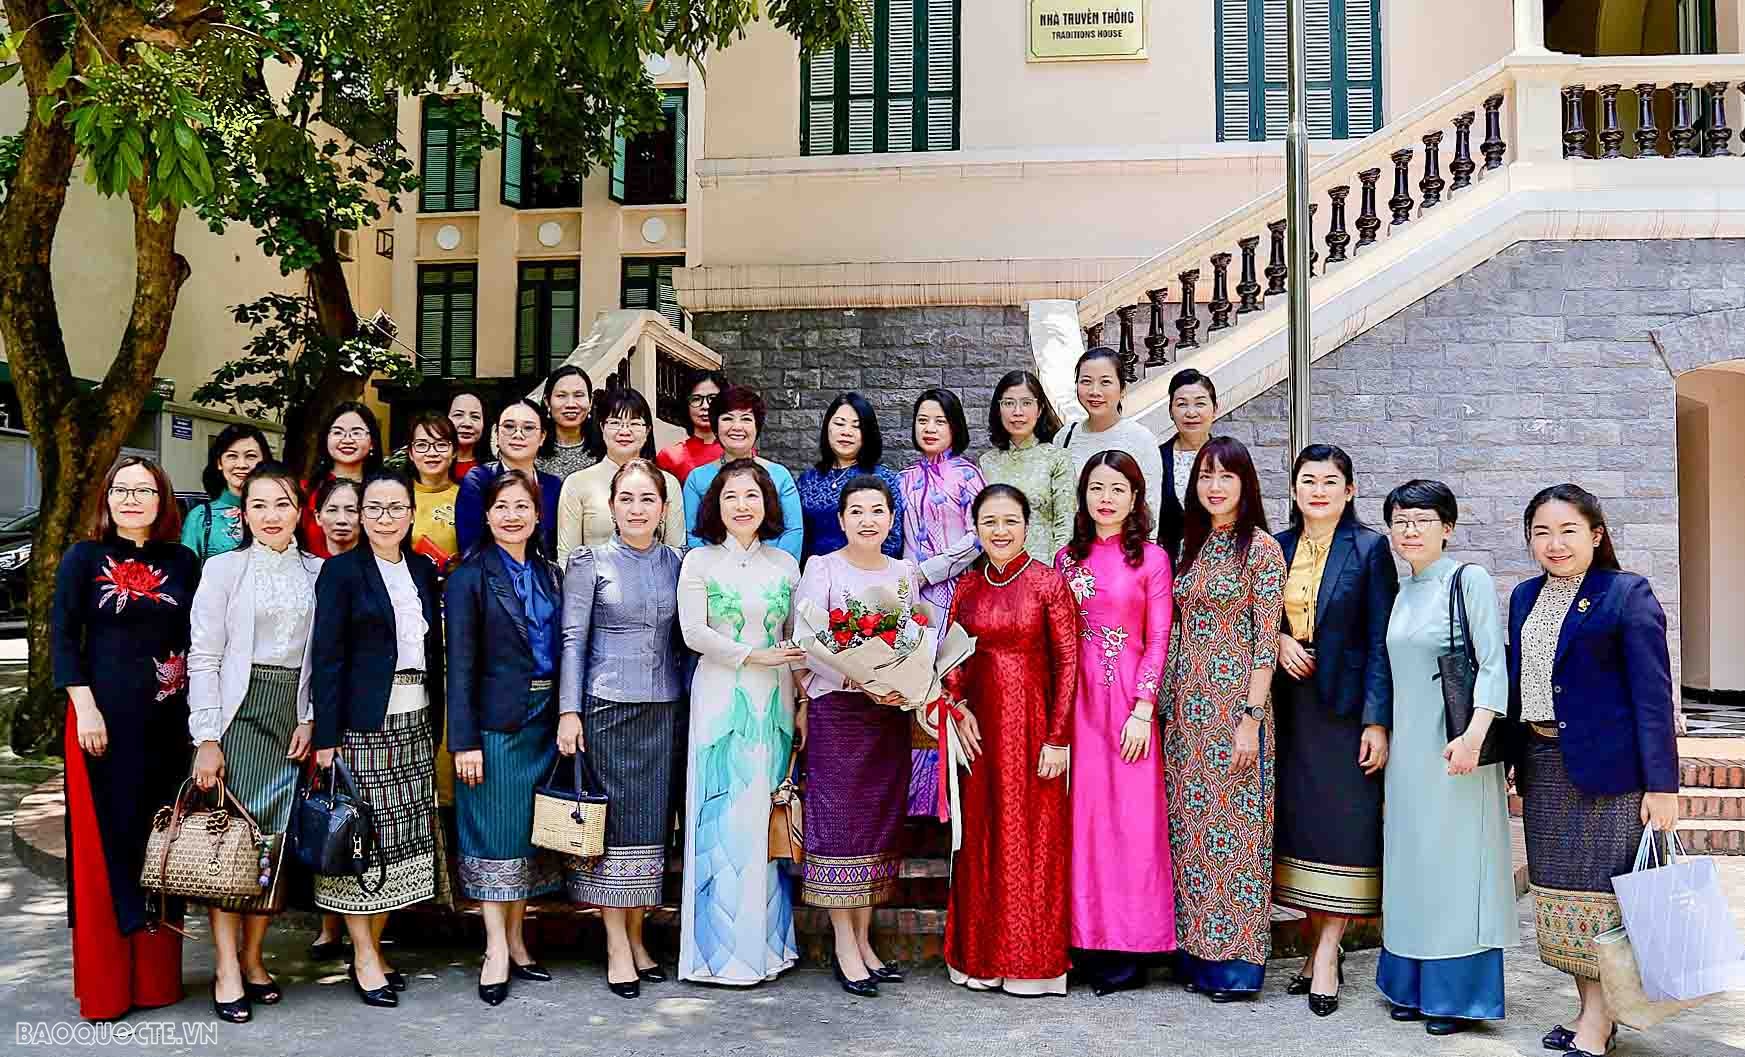 VUFO mong muốn có điều kiện giao lưu, học hỏi các lãnh đạo, nhà ngoại giao nữ của Lào, đồng thời sẵn sàng hợp tác, chia sẻ kinh nghiệm với các cán bộ nữ Bộ Ngoại giao Lào, đặc biệt trong công tác đối ngoại nhân dân.